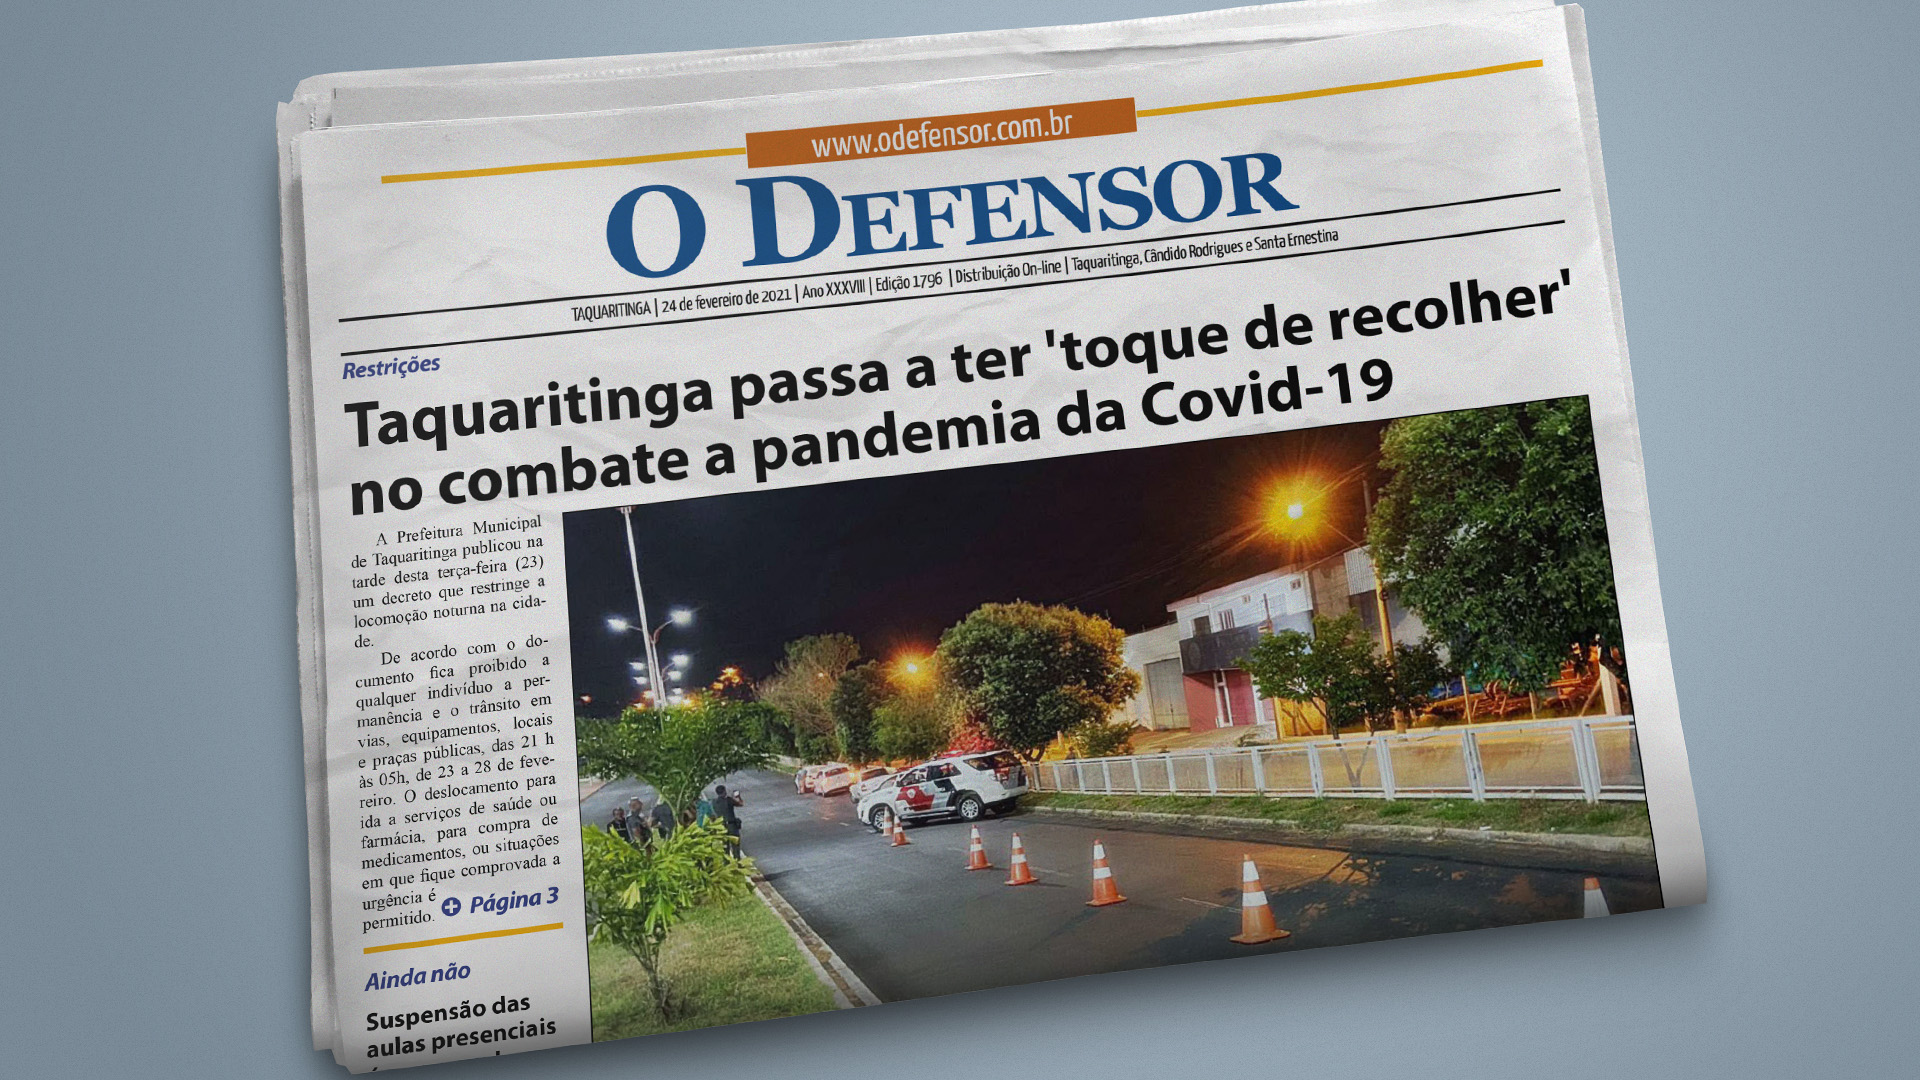 Dois Pontos - O Defensor  O Portal de Notícias de Taquaritinga e região